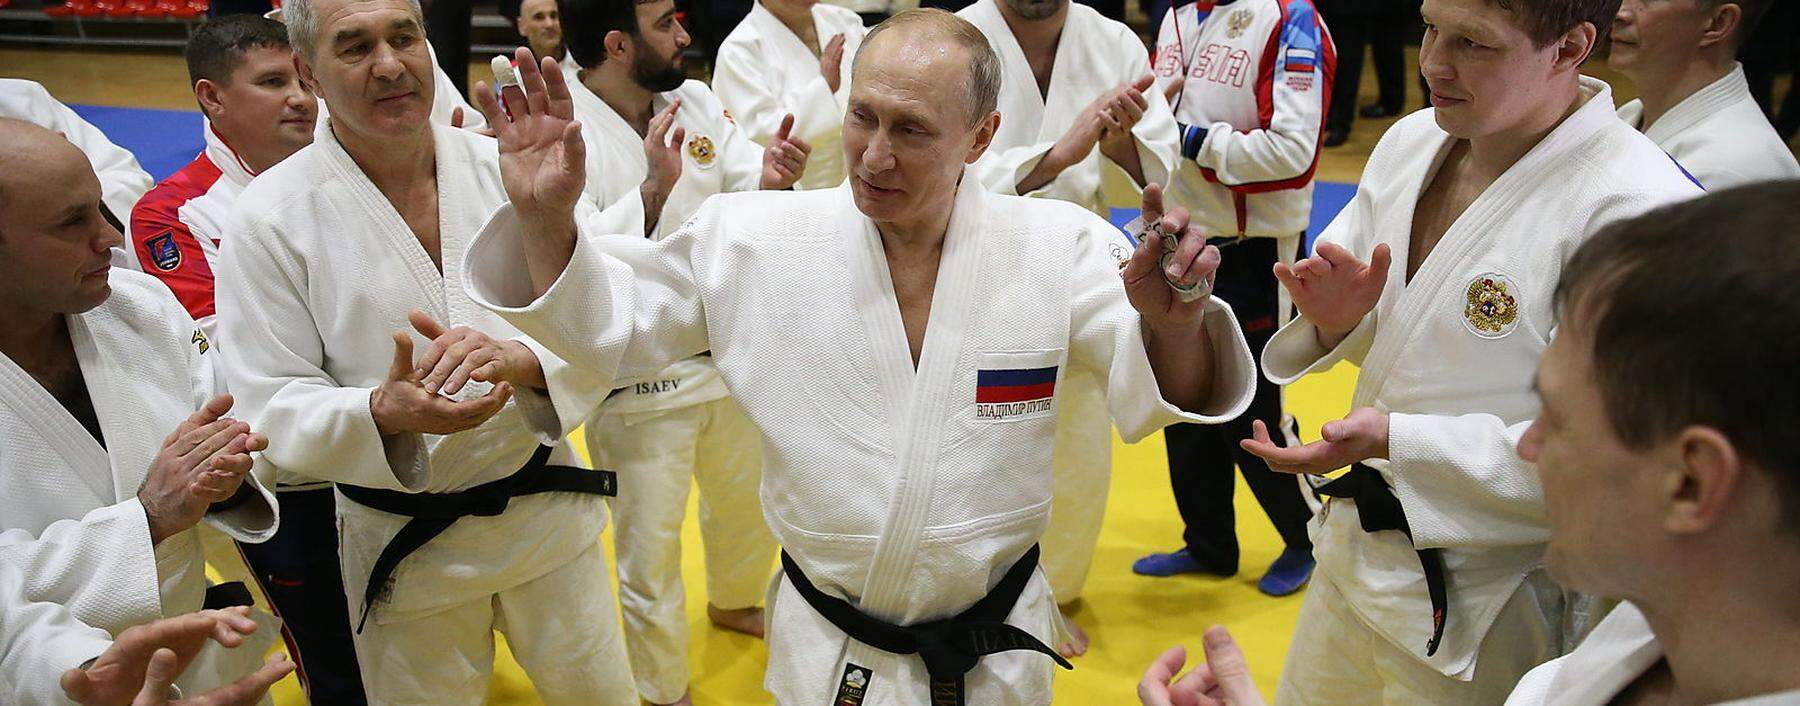 Putin beim Judo. Dutzende Entscheidungsträger in Wirtschaft und Politik tun es ihm gleich.